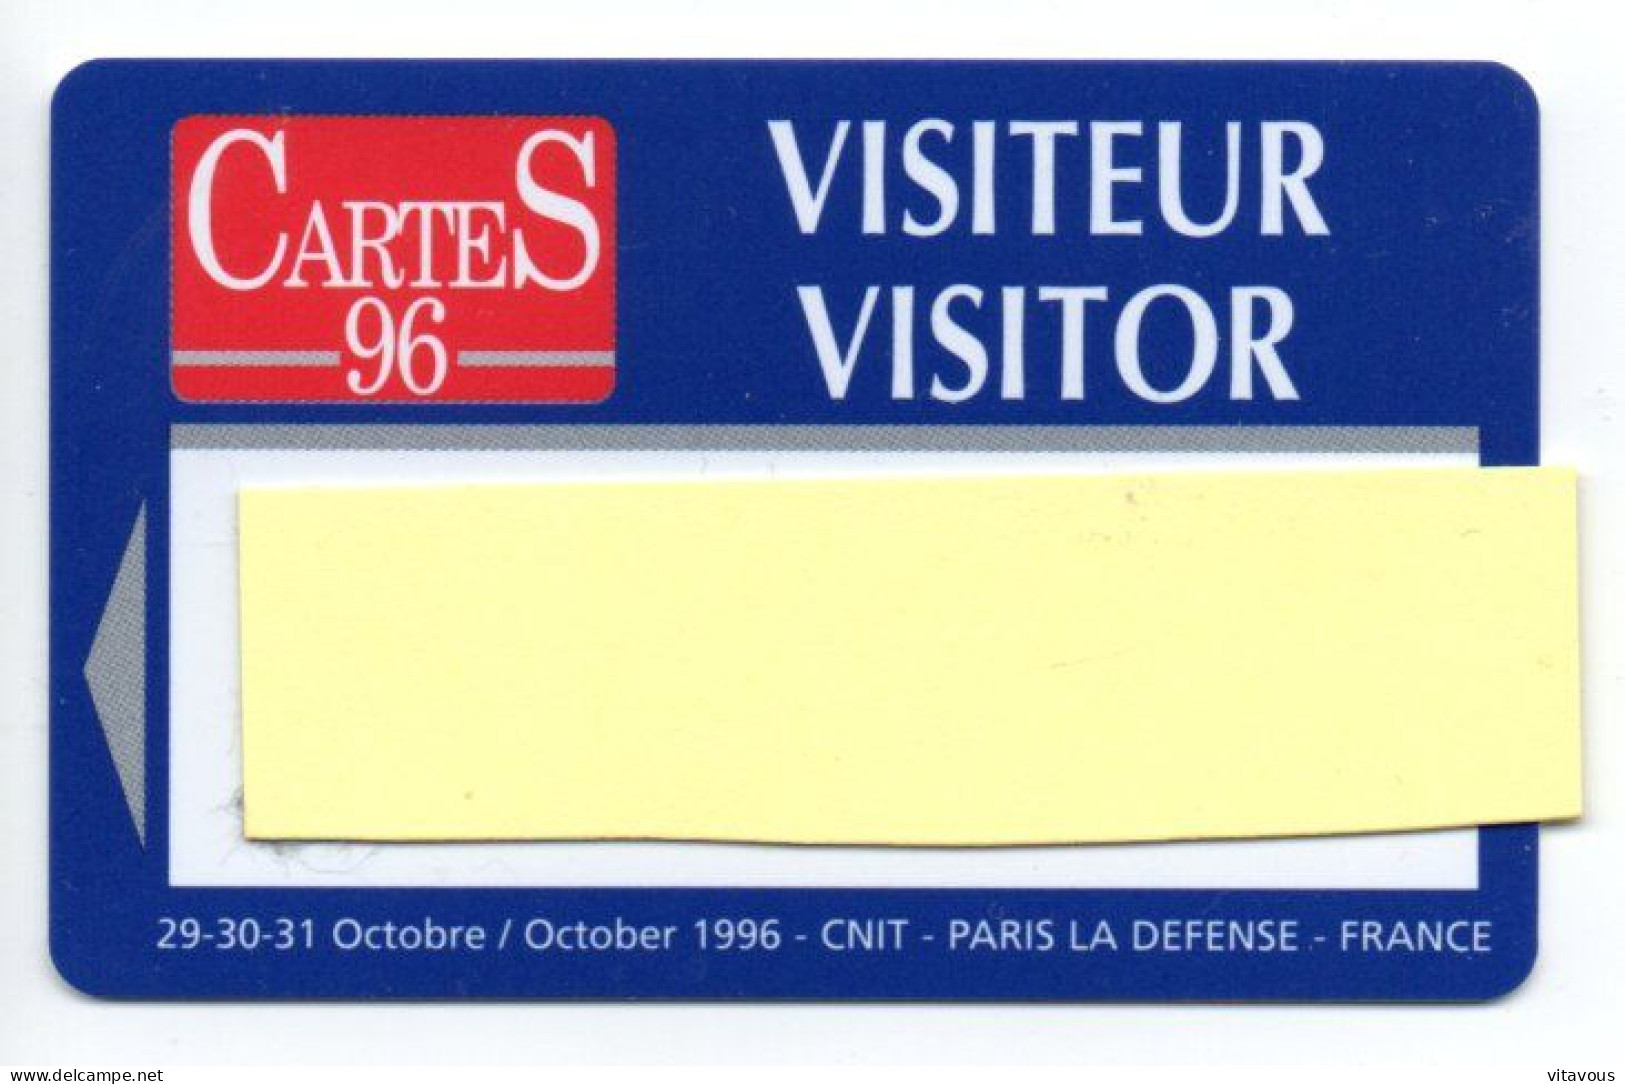 Carte Salon CarteS 96  France Paris Card  Magnétique Karte TBE (F 616) - Exhibition Cards